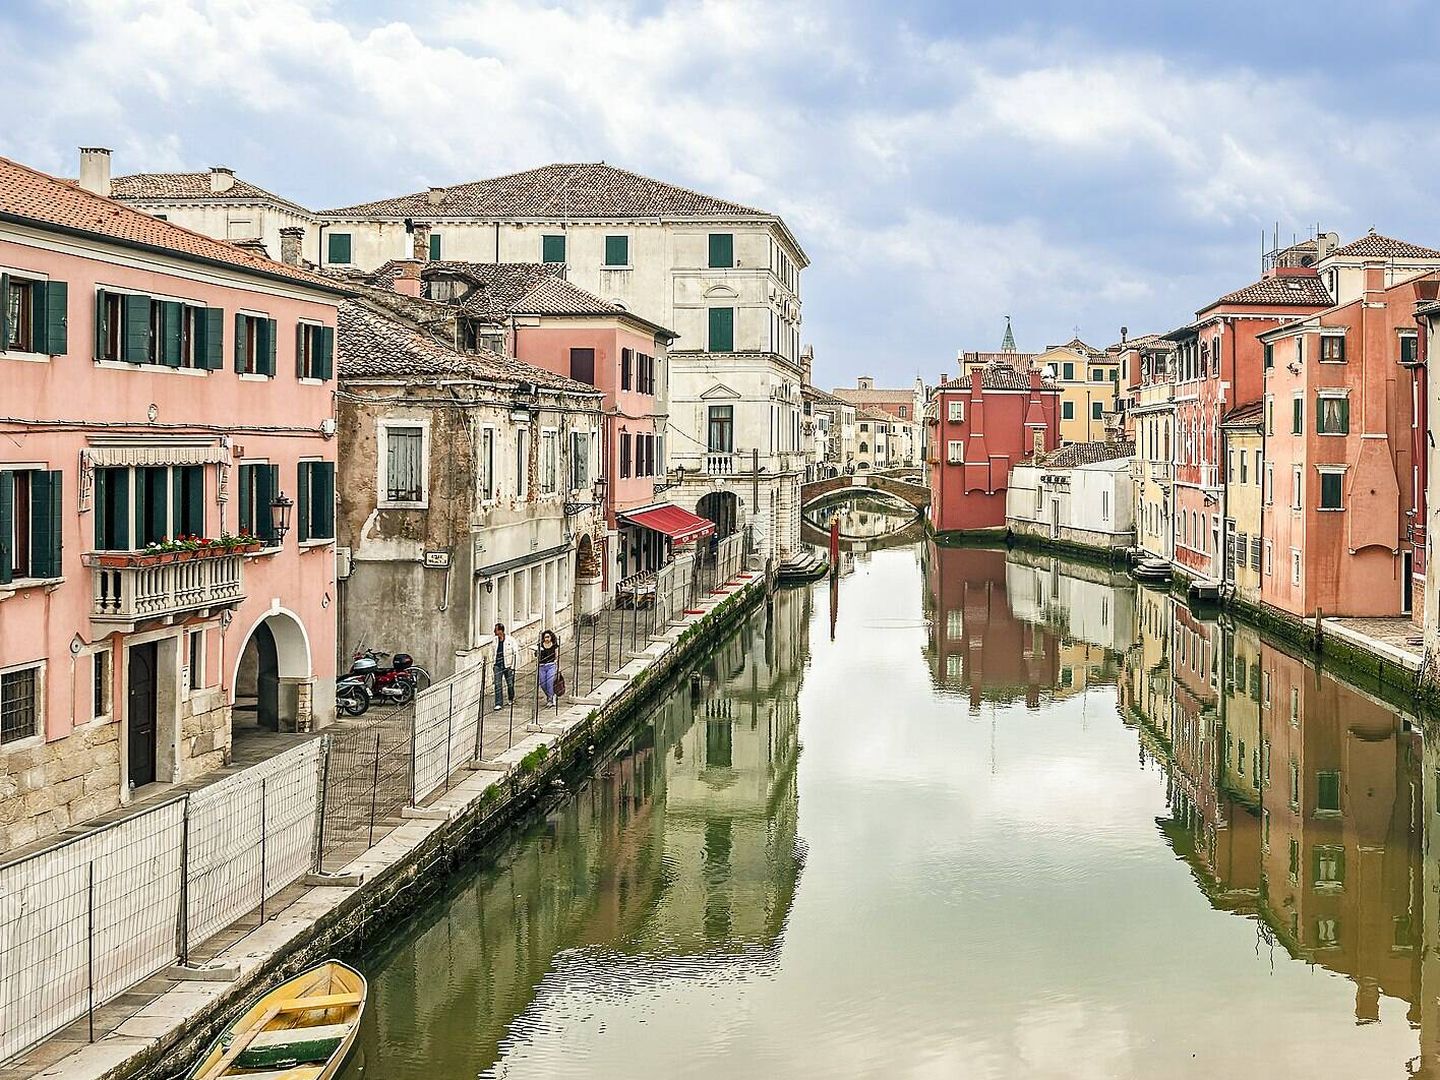 Imagen de un canal en Chioggia. (Creative Commons)